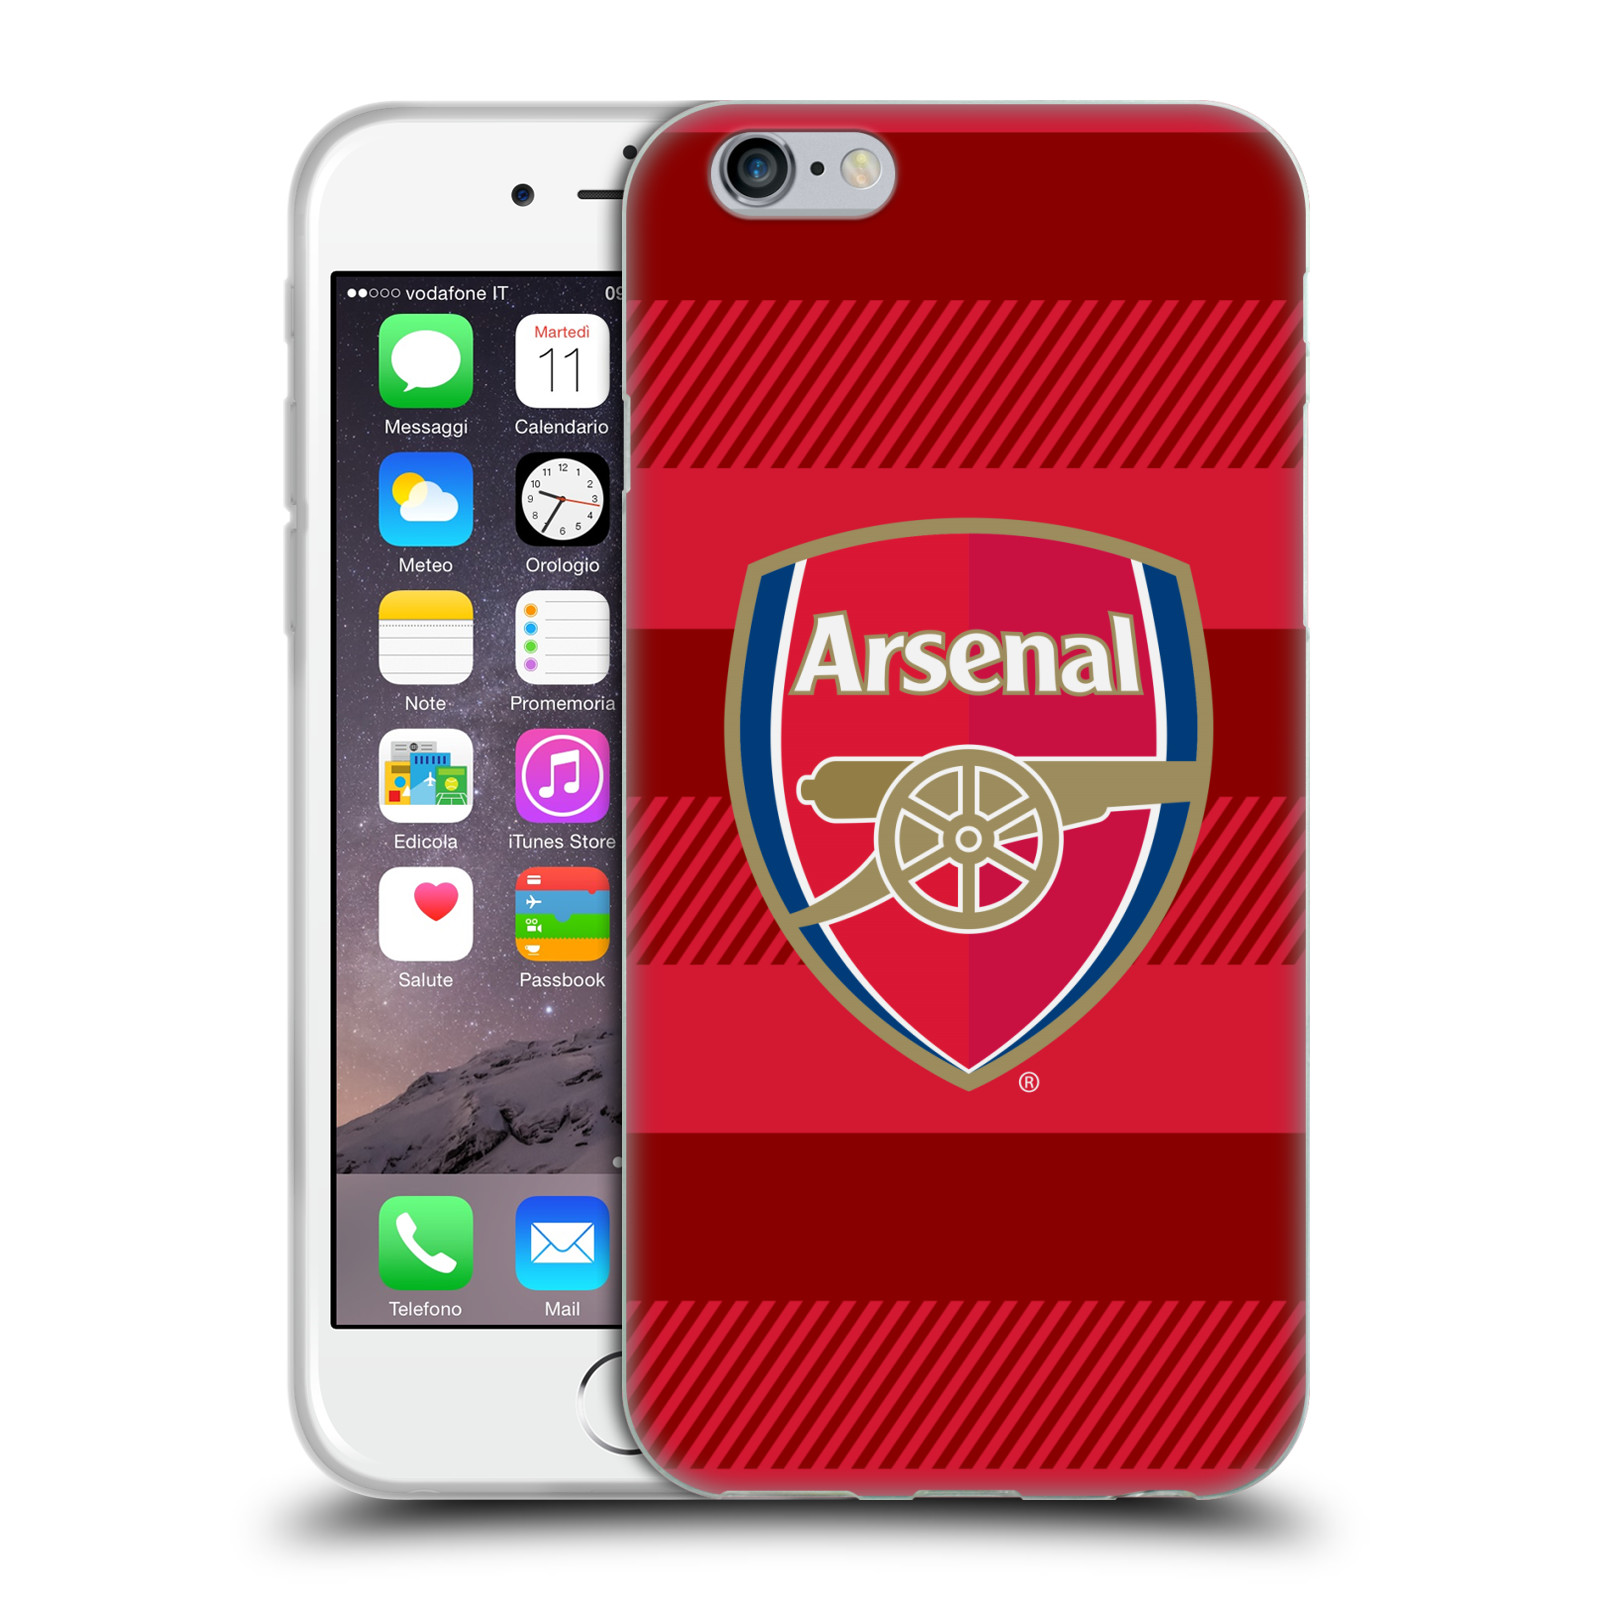 Silikonové pouzdro na mobil Apple iPhone 6 - Head Case - Arsenal FC - Logo s pruhy (Silikonový kryt či obal na mobilní telefon s motivem klubu Arsenal FC - Logo s pruhy pro Apple iPhone 6)